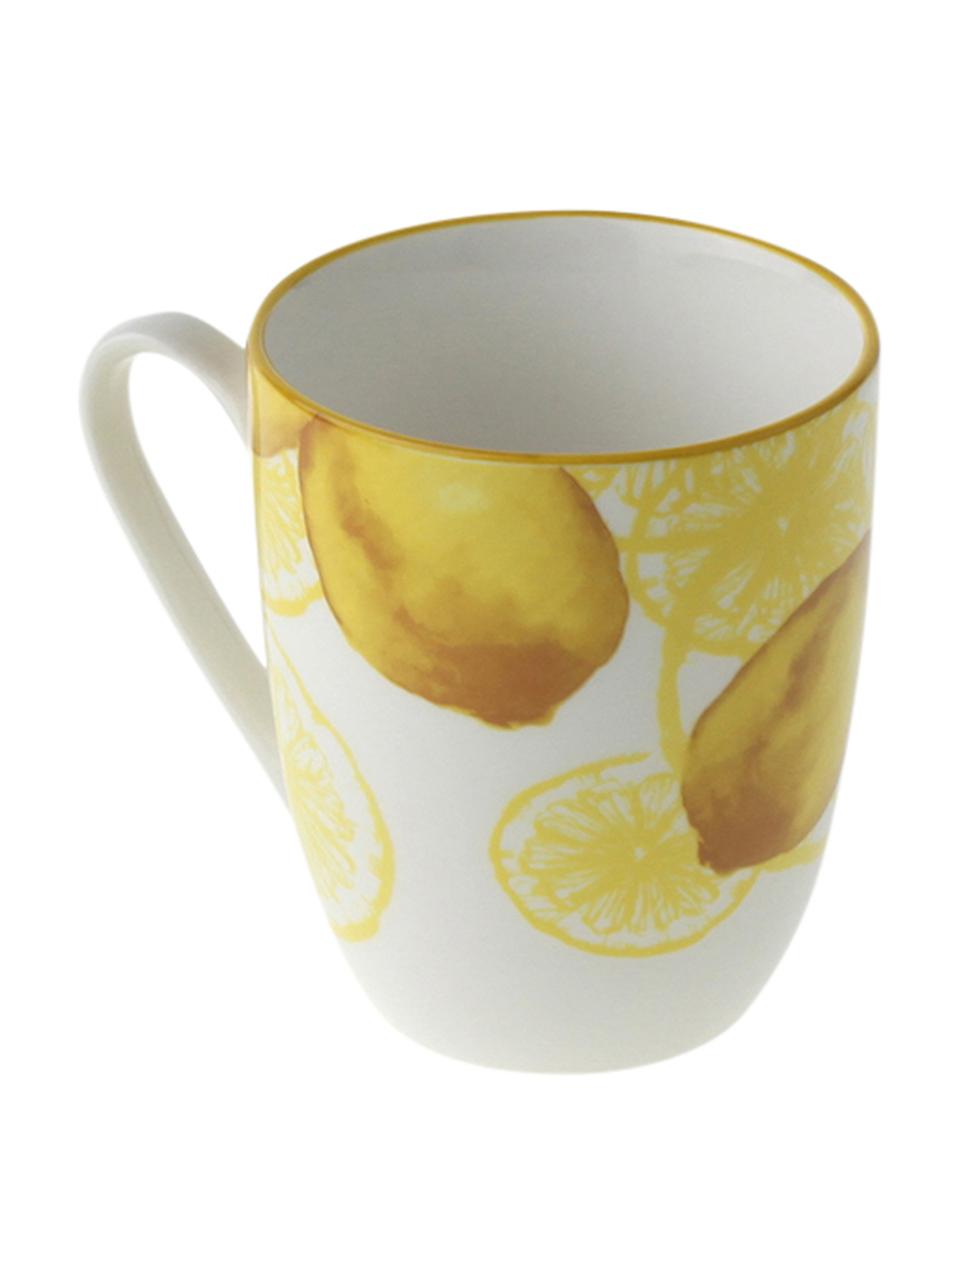 Tassen Lemon mit Zitronen-Motiv, 2 Stück, Porzellan, Weiß, Gelb, Ø 9 x H 10 cm